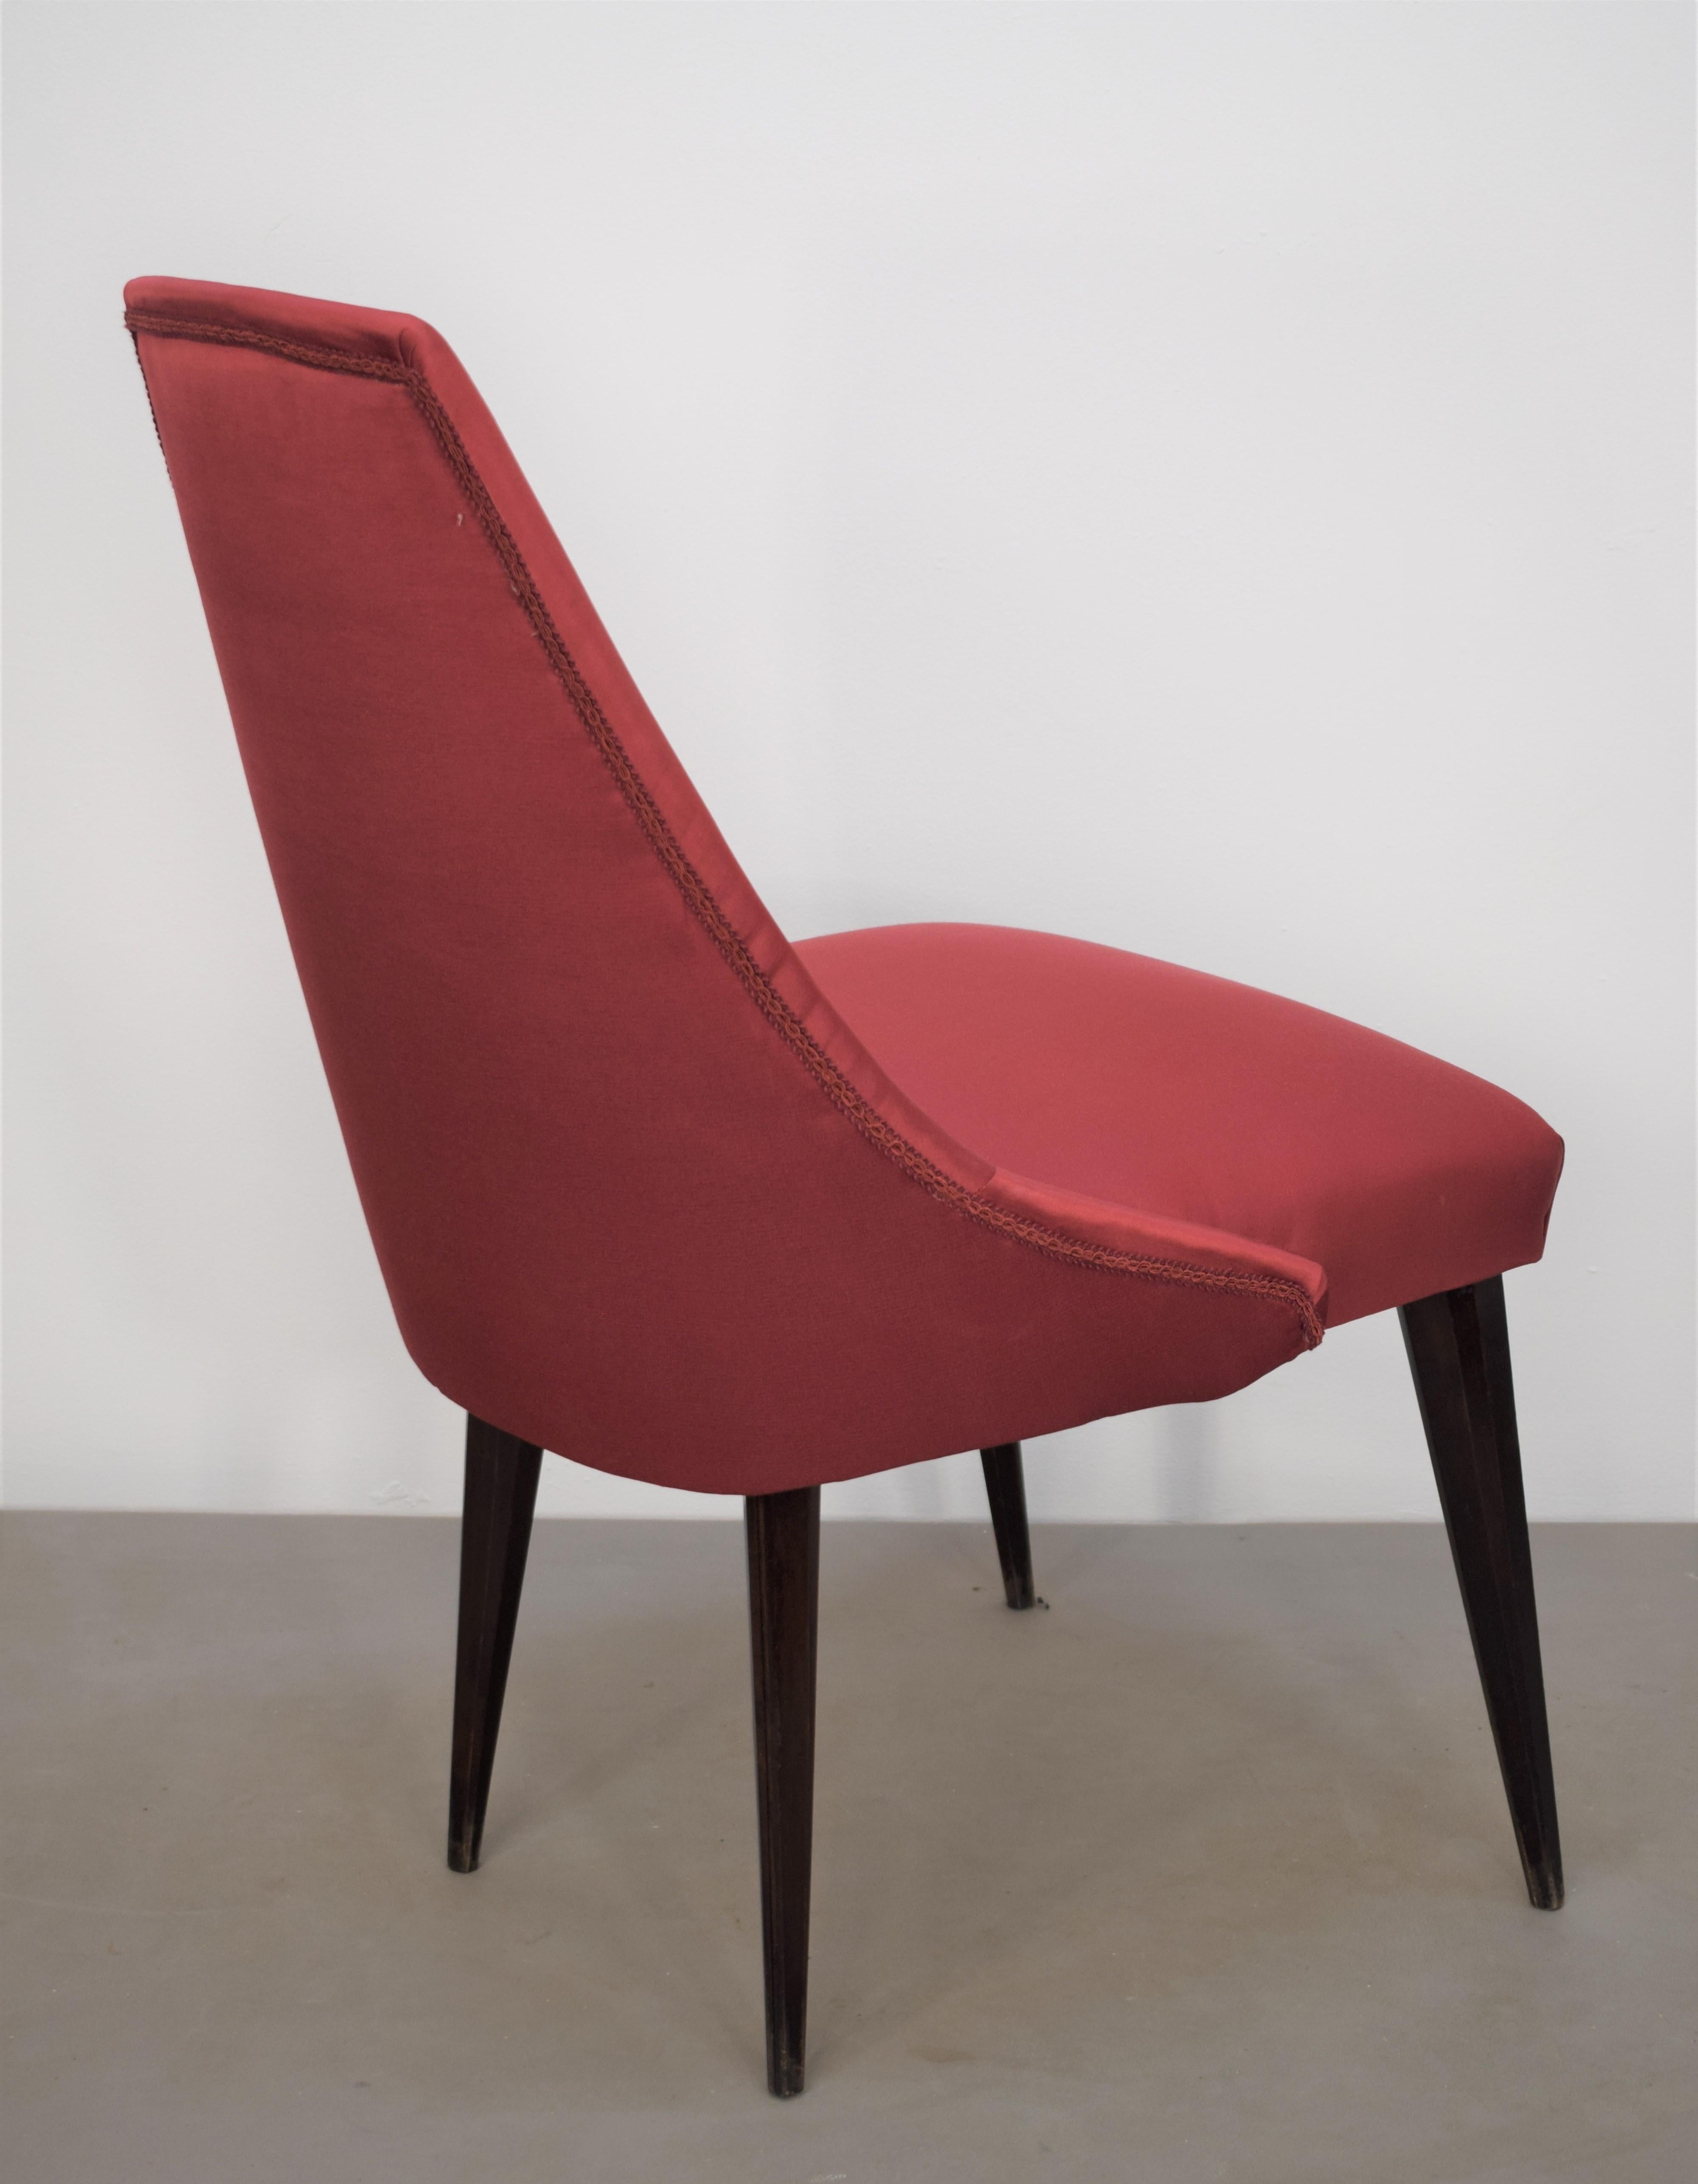 Set of 3 Italian Chairs, Osvaldo Borsani Style, 1960s For Sale 8